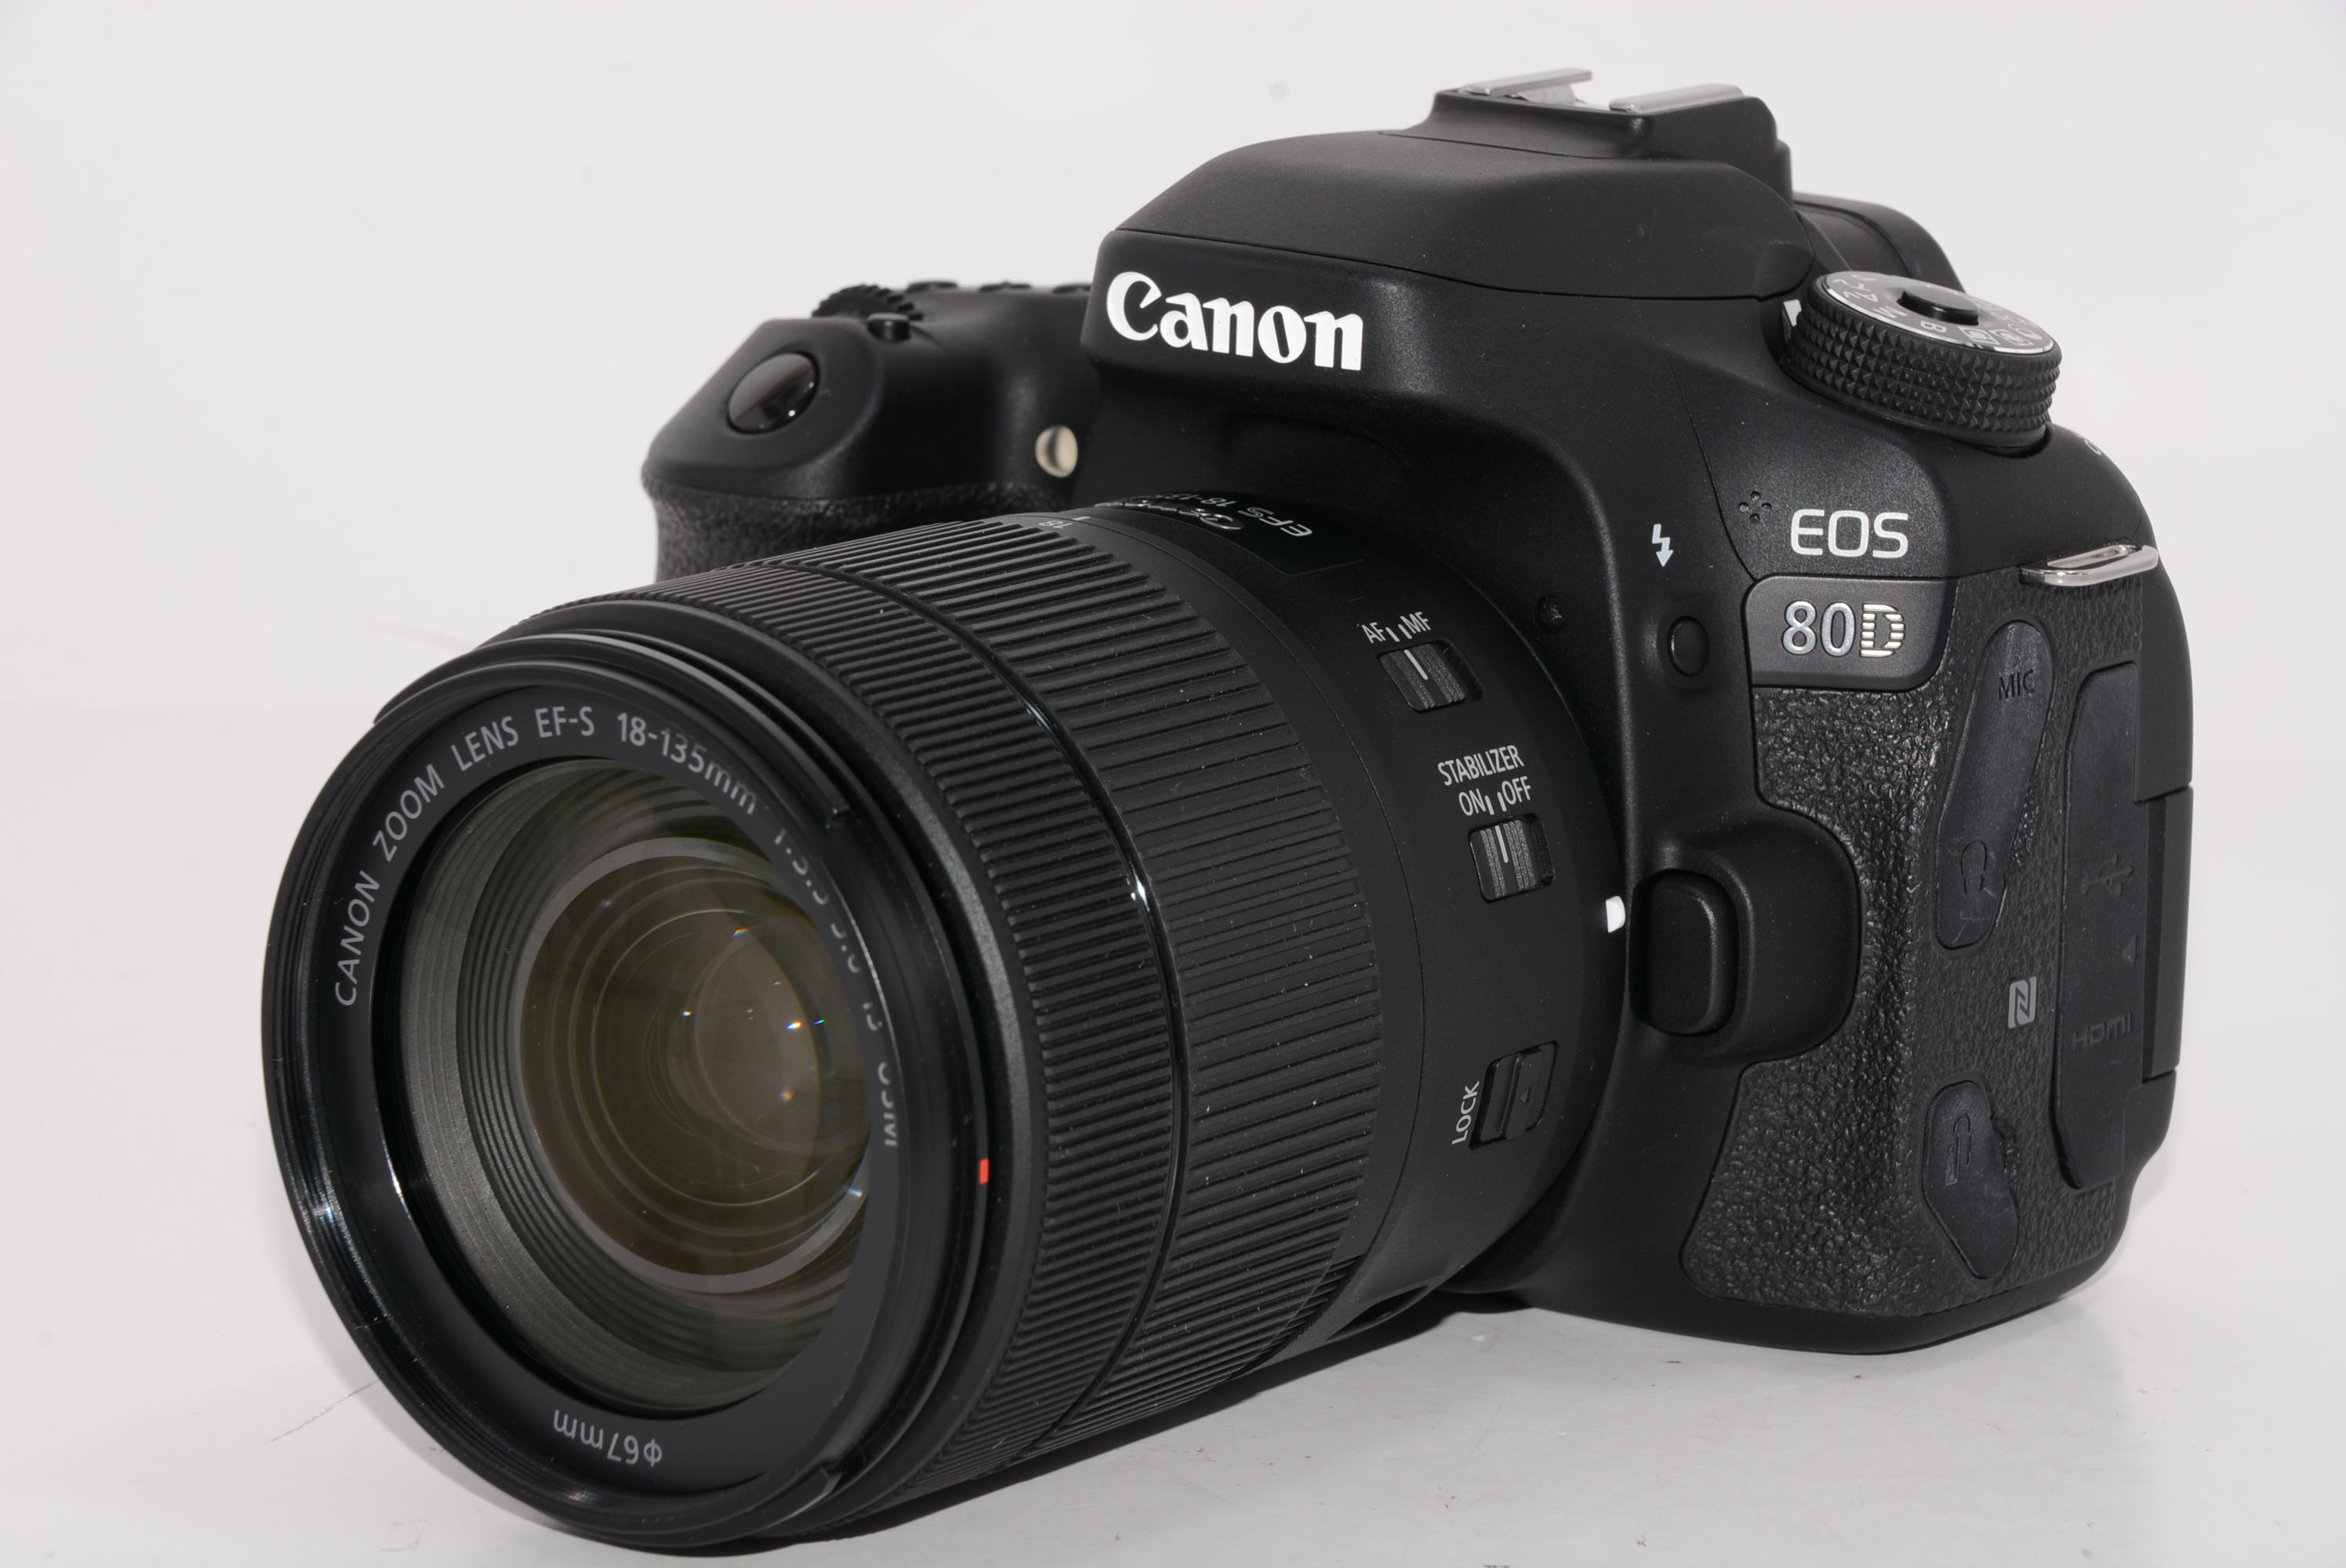 Canon デジタル一眼レフカメラ EOS 80D レンズキット EF-S18-135mm F3.5-5.6 IS USM 付属 EOS80D18135USMLK